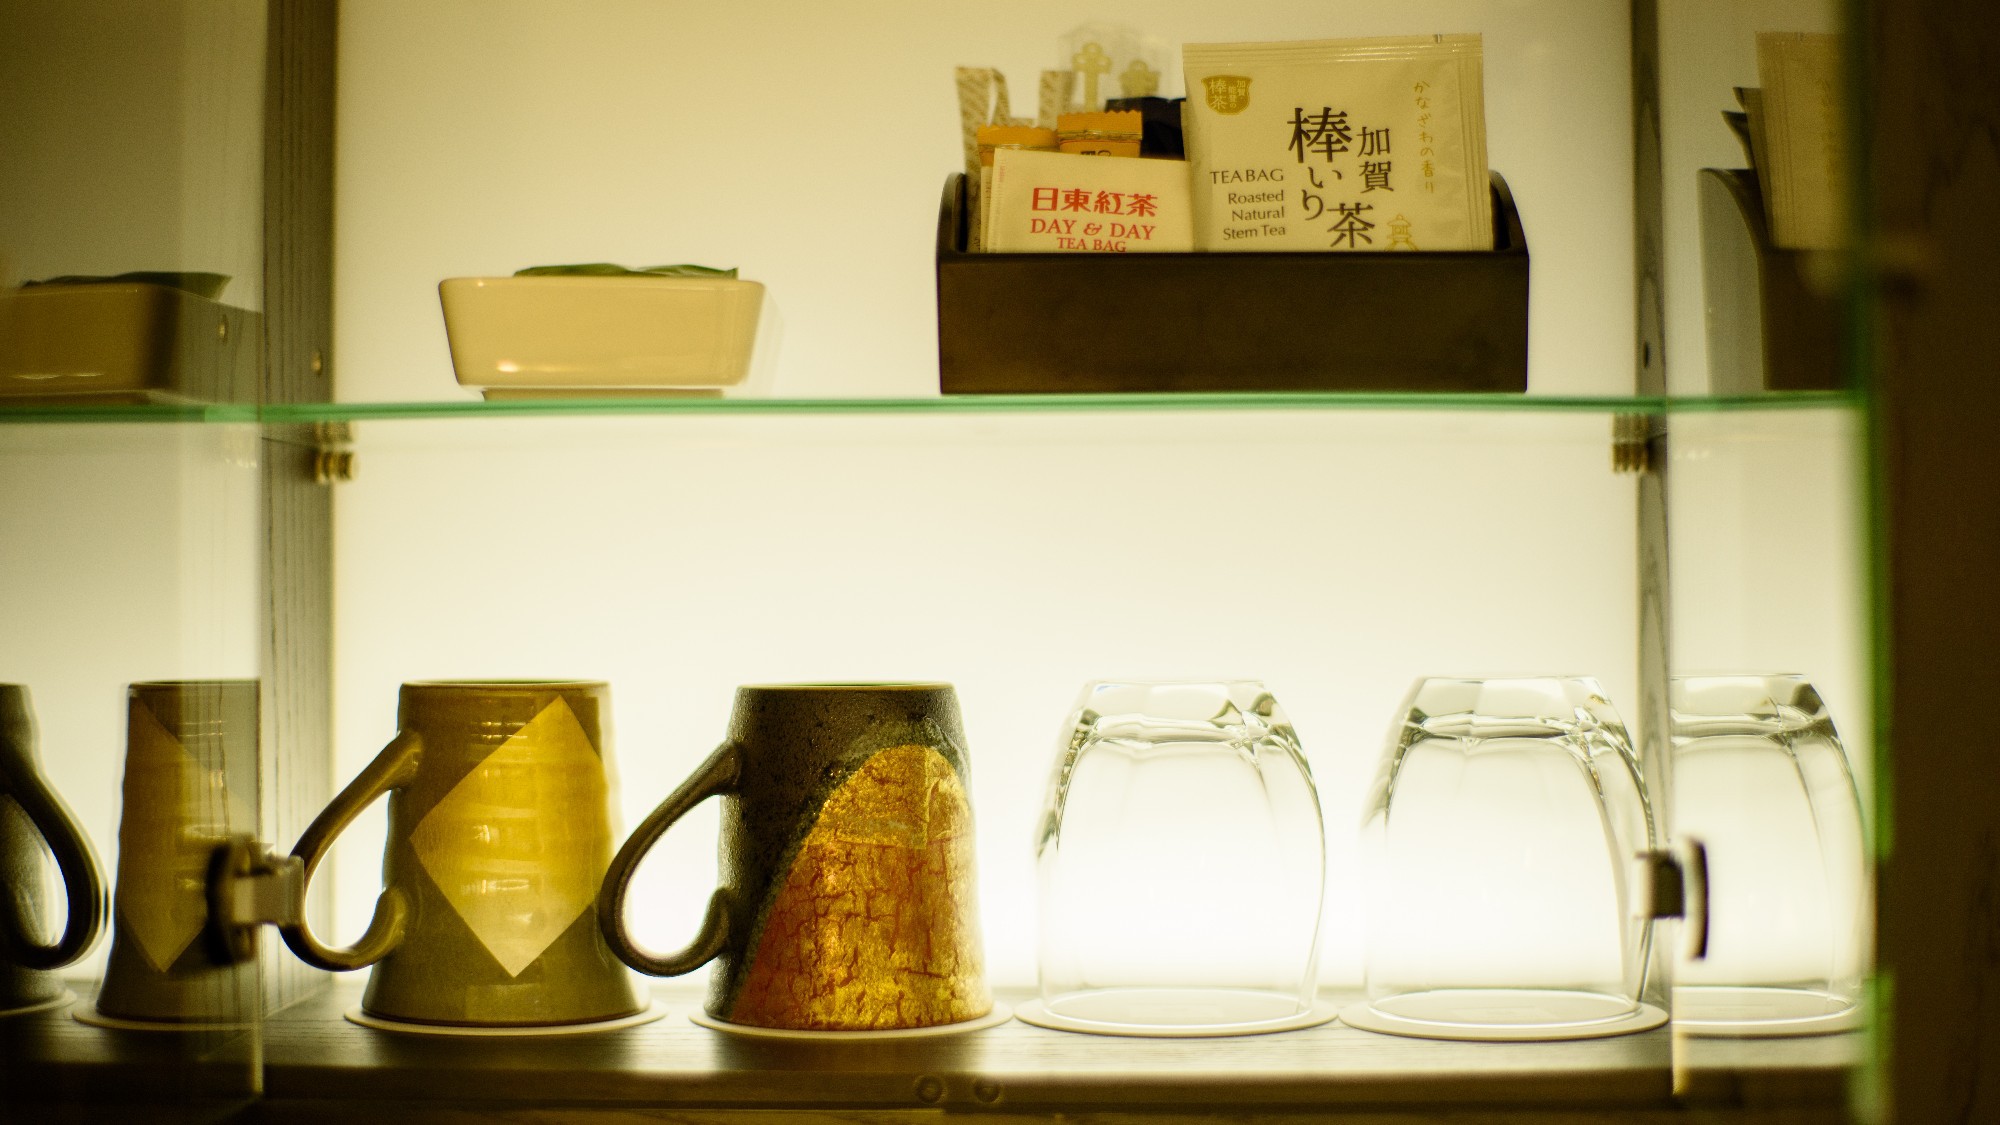 ラグジュアリーフロアでは、金沢の伝統工芸「九谷焼」のマグカップ・名産品「加賀棒茶」をご用意。